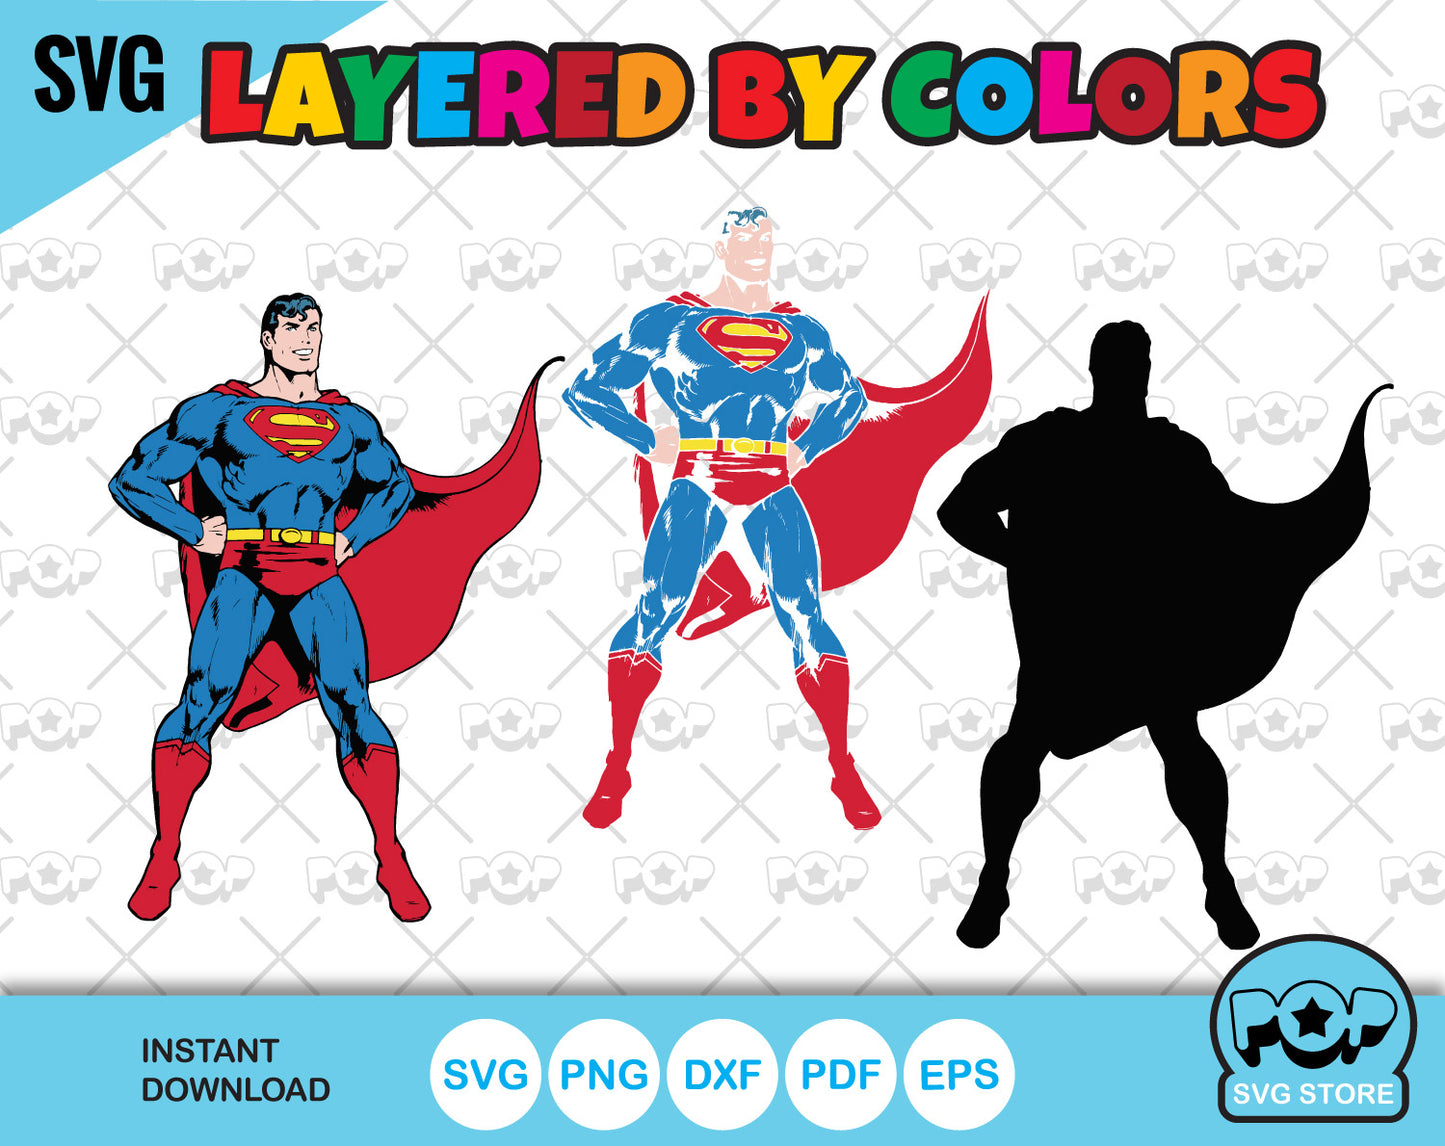 Superman 50 cliparts bundle, Superman SVG cut files for Cricut / Silhouette, PNG, DXF, instant download